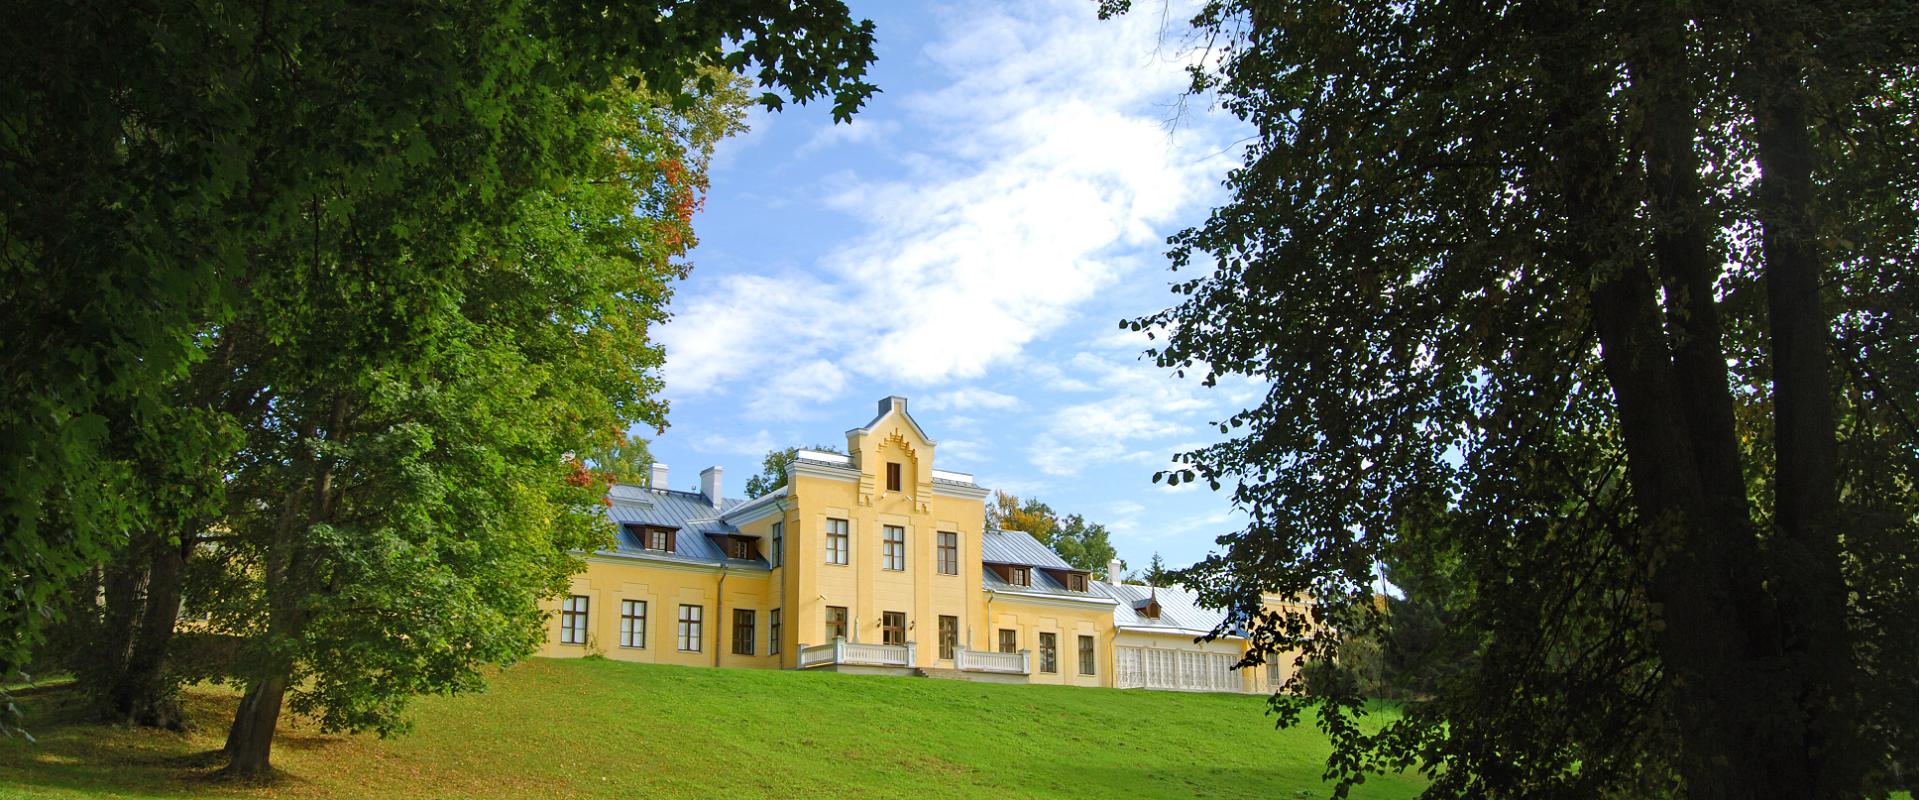 Eesti sõjamuuseum - kindral Laidoneri muuseum